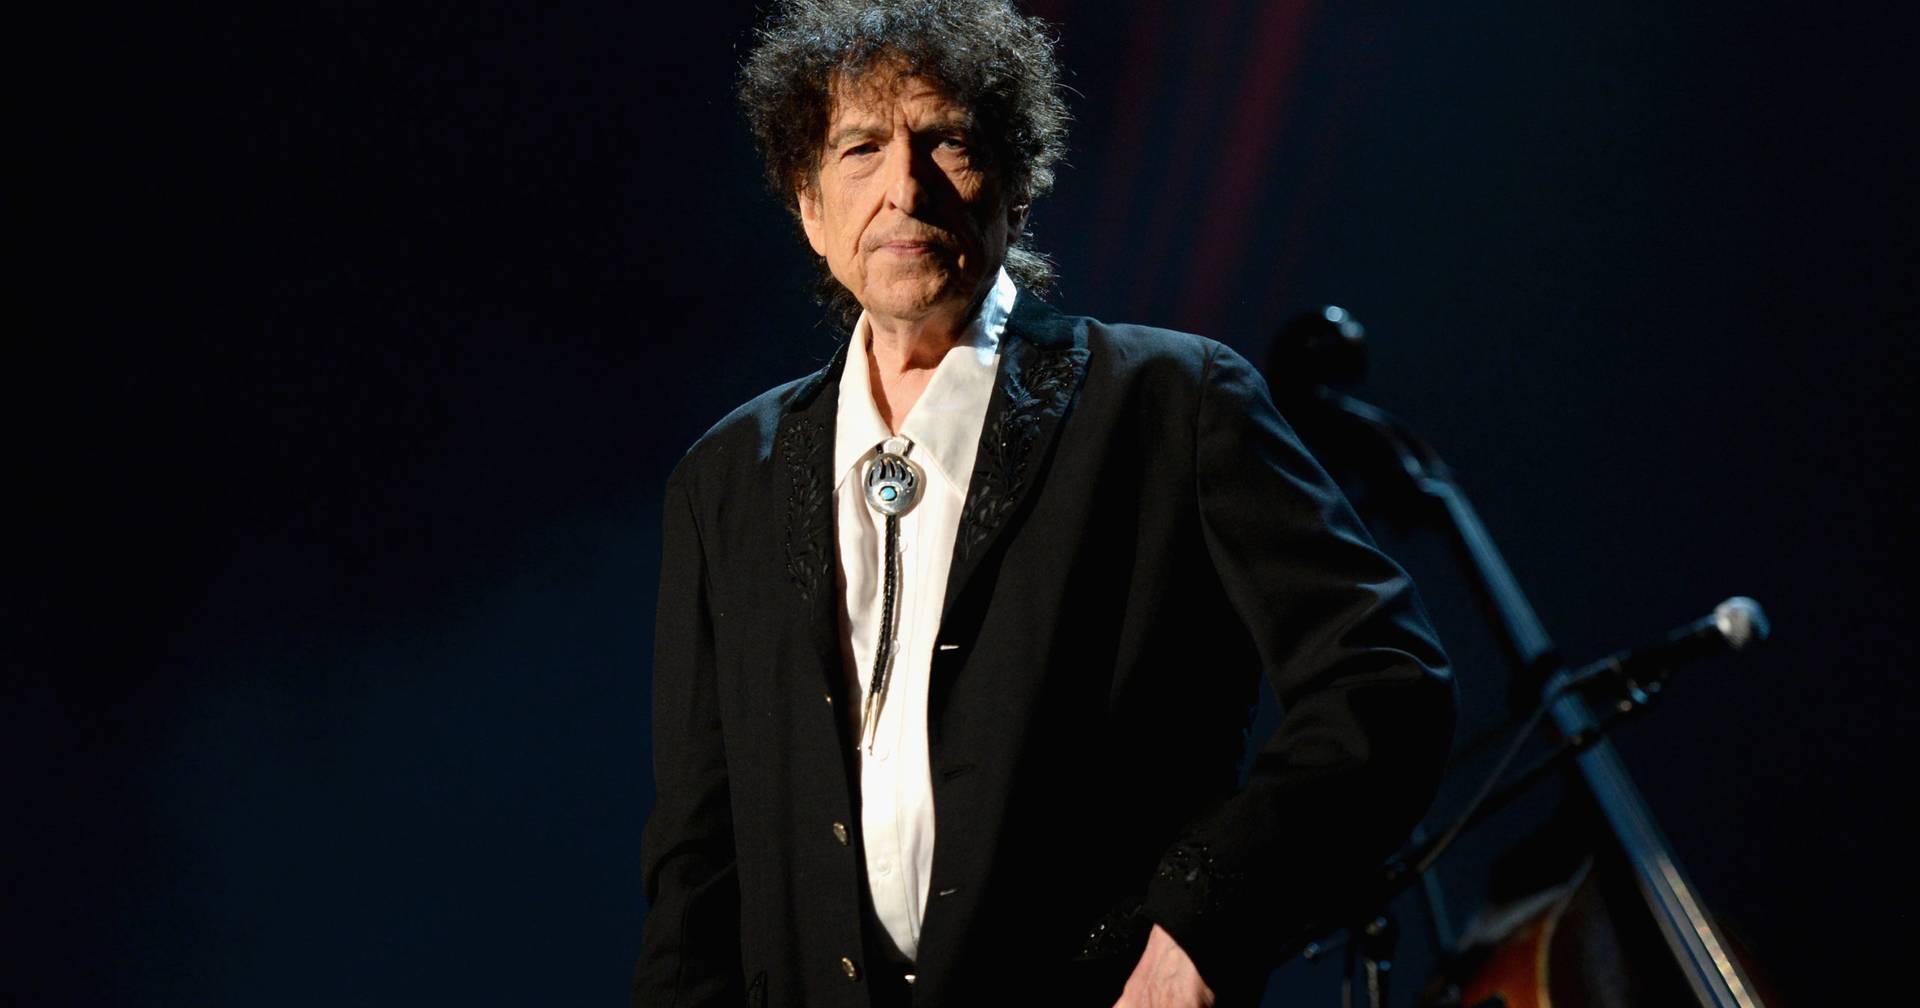 Bob Dylan veröffentlicht im November ein Buch mit Essays über die Kunst des Songwritings